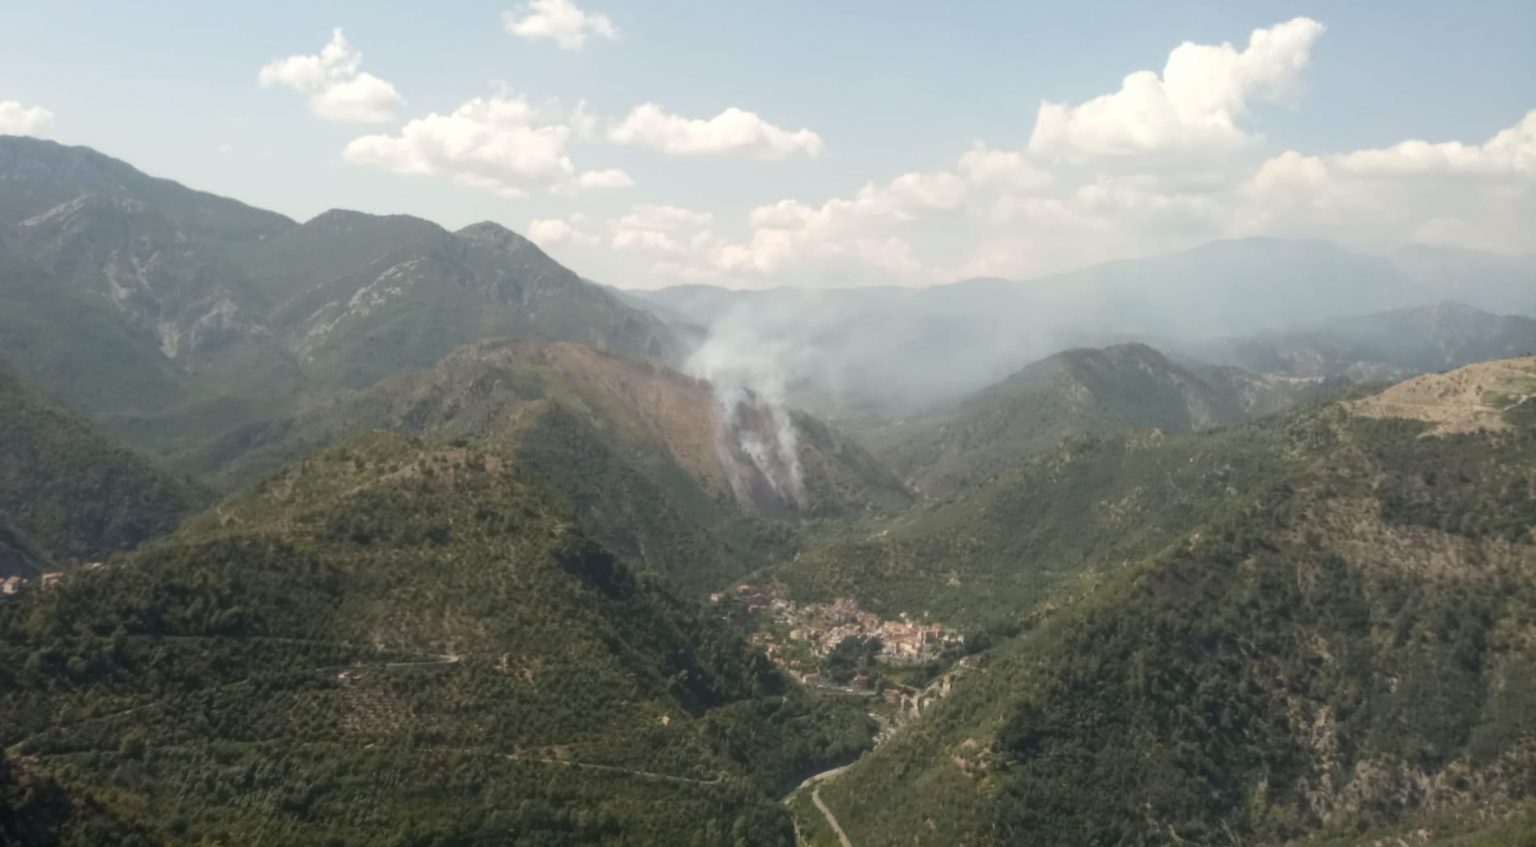 Incendio in val Roja, brucia il bosco in località Giuma